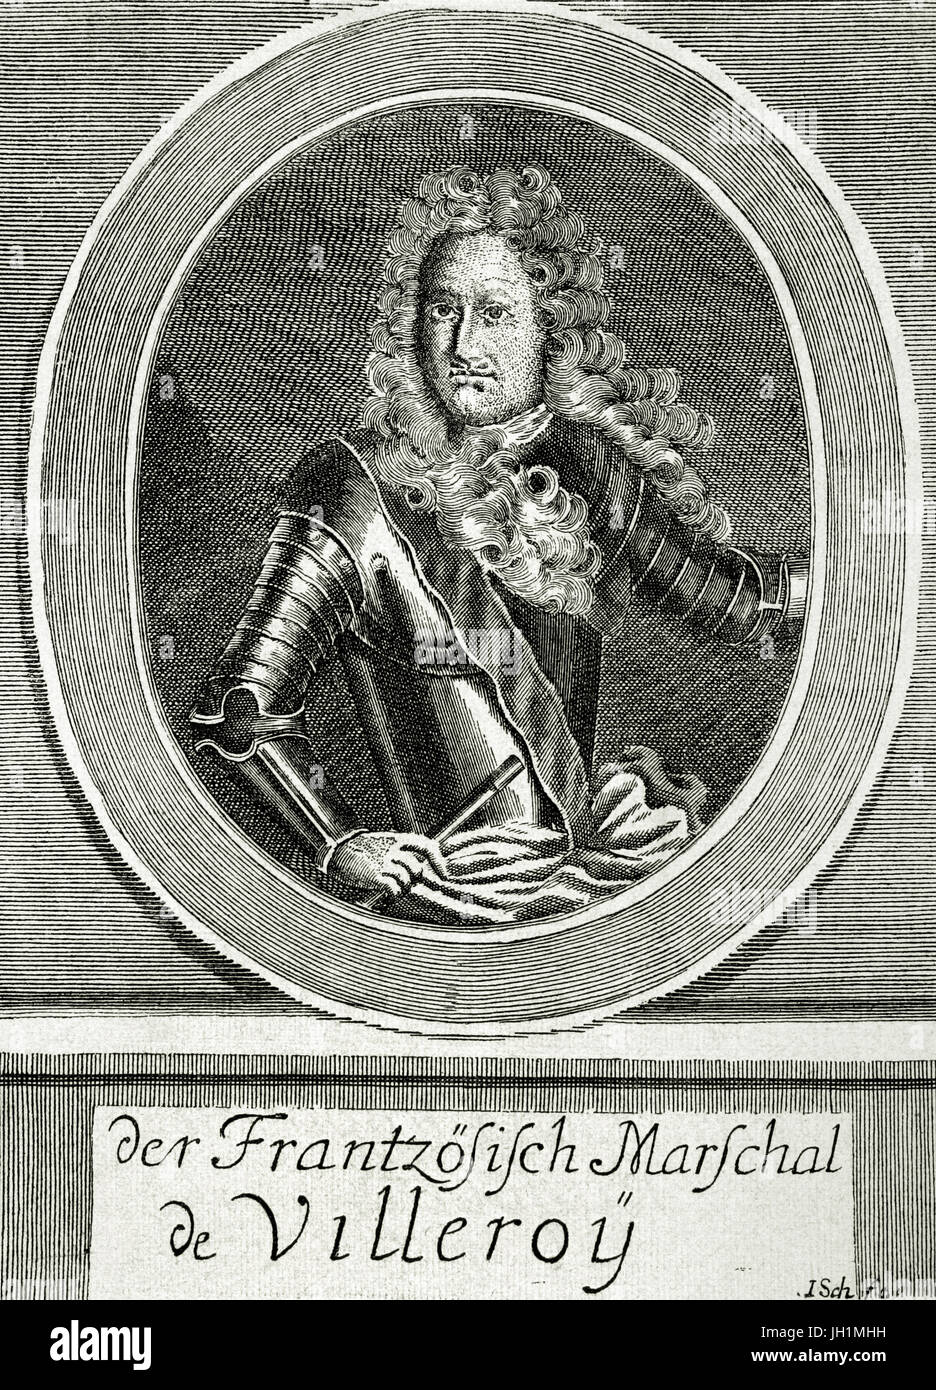 Francois de Neufville, 2. Duc von Villeroy (1644-1730). Französischer Soldat. Gravur in Universalgeschichte, 1885. Stockfoto